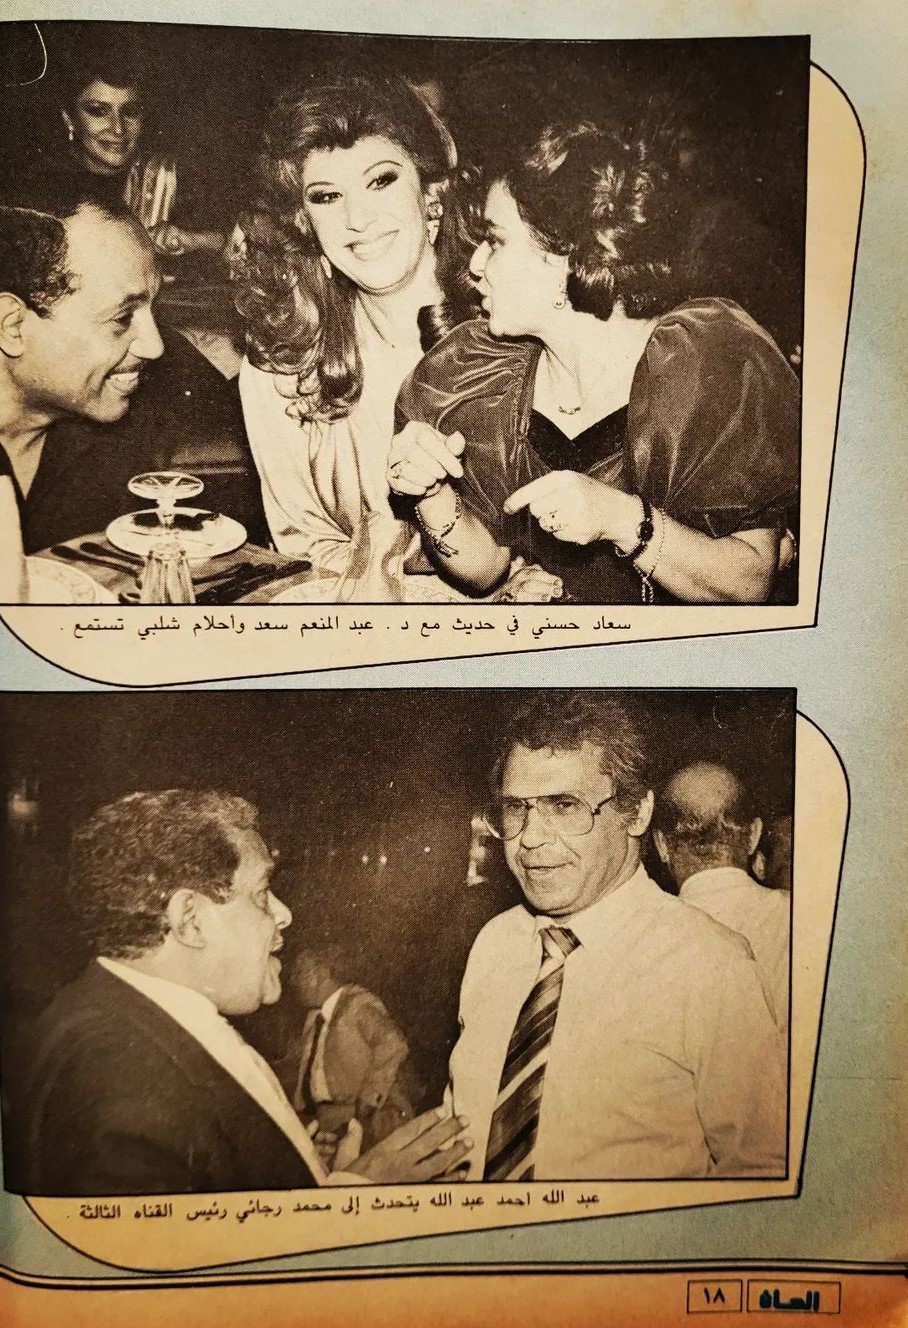 خبر صحفي : سندريللا الشاشتين .. في احتفال جمعية فناني الشاشة الصغيرة 1986 م 519